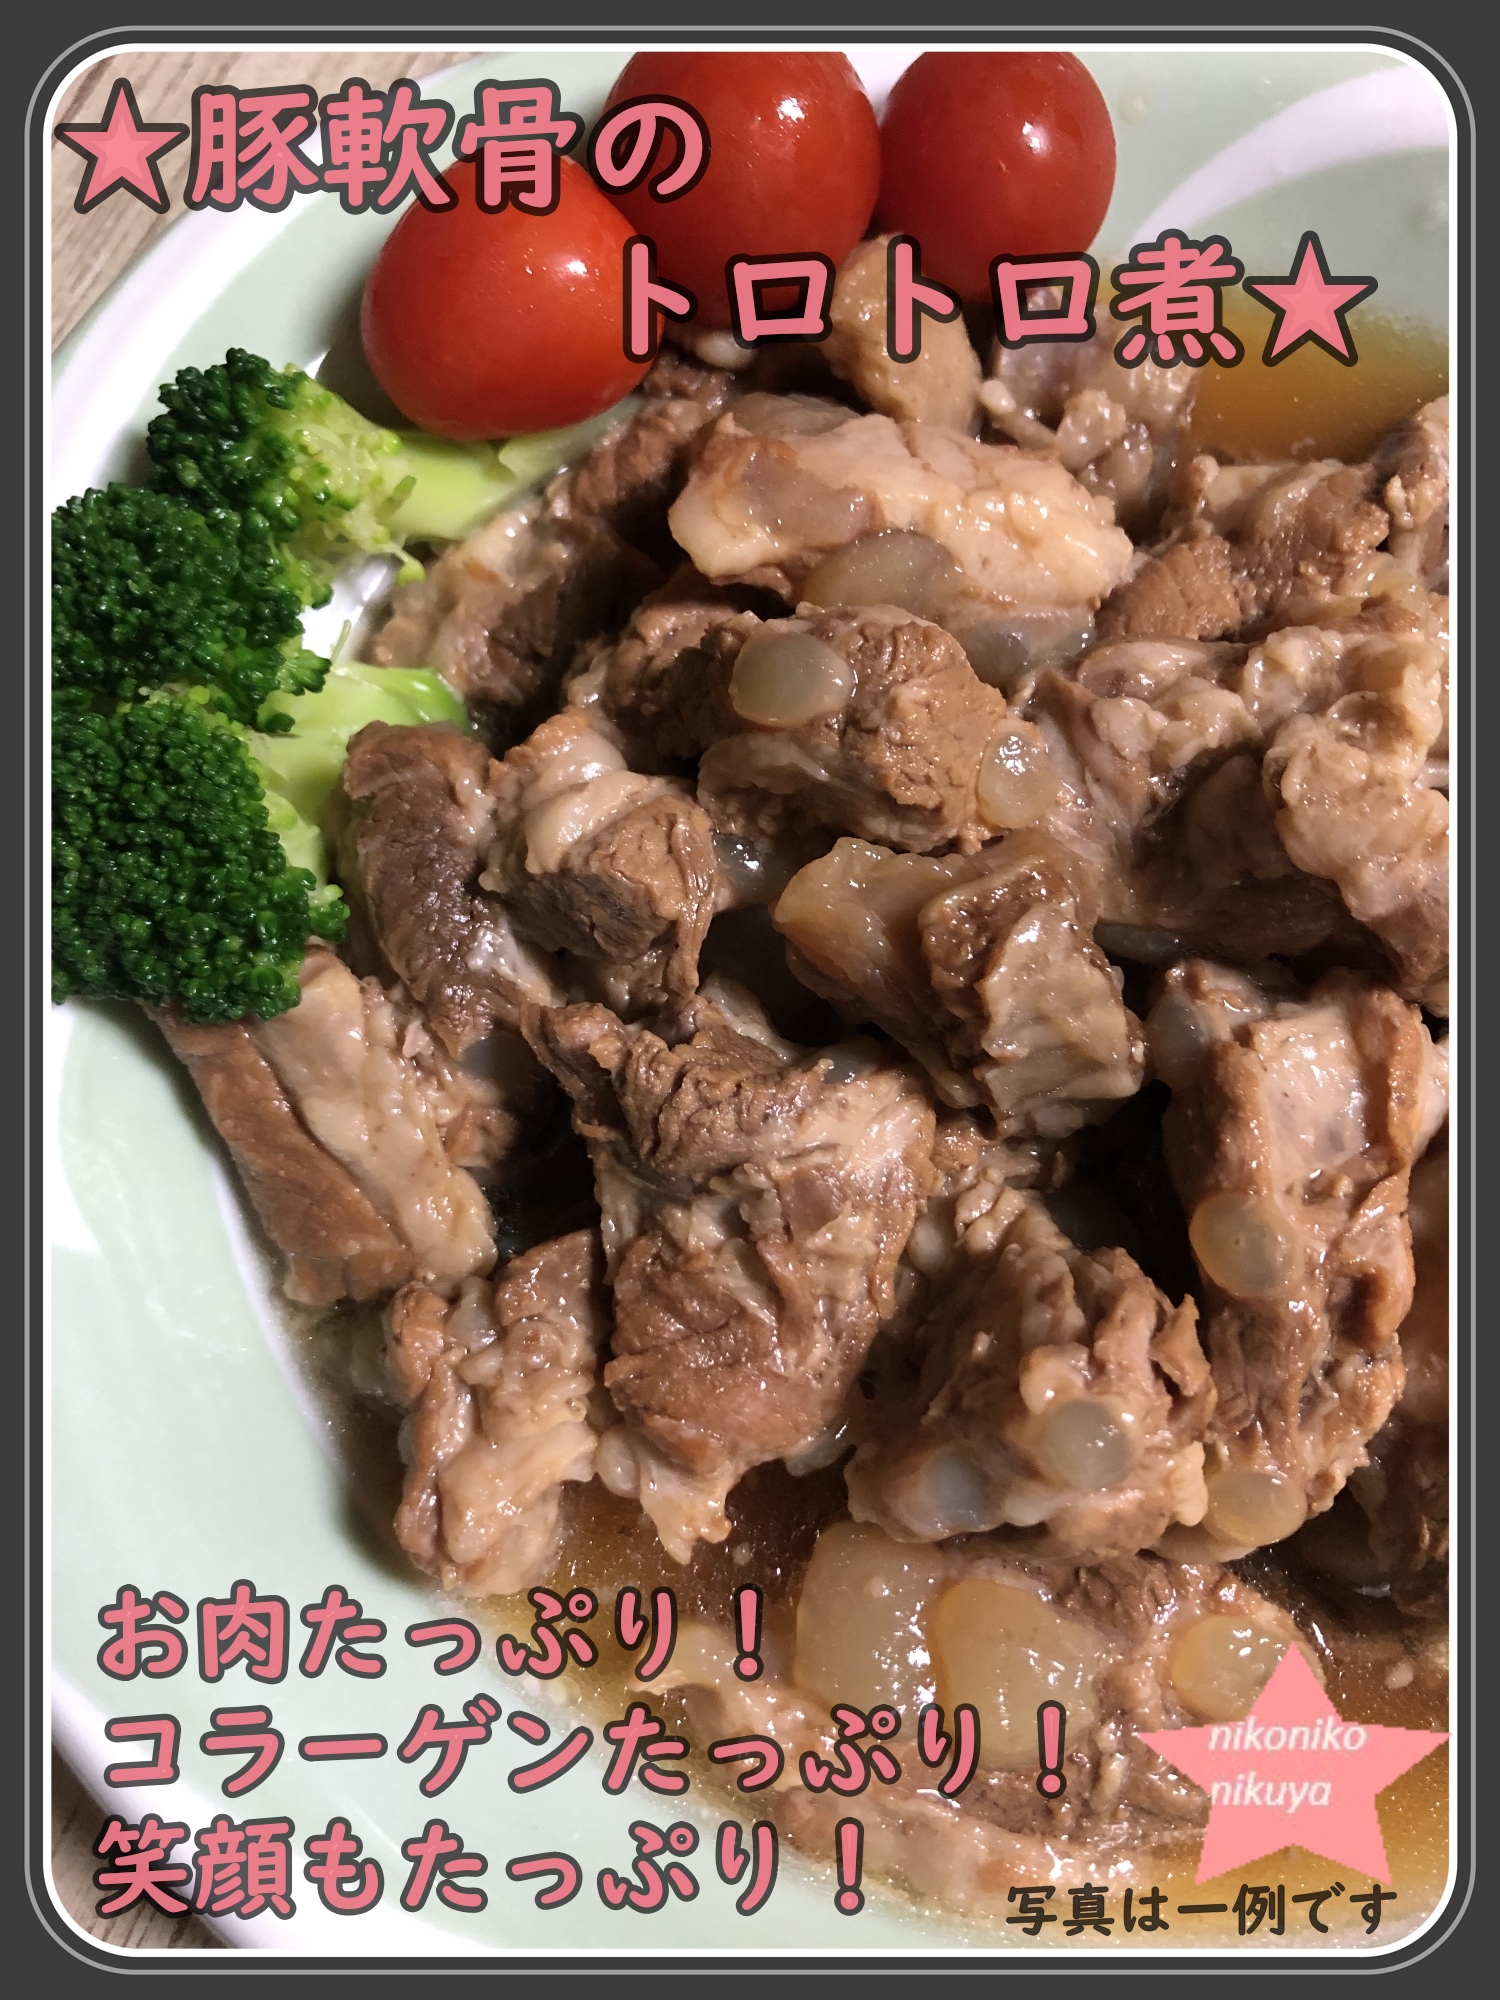 パイカ 豚軟骨 豚ばら軟骨 なんこつ 肉 豚肉 岡山県産豚バラ軟骨1kg